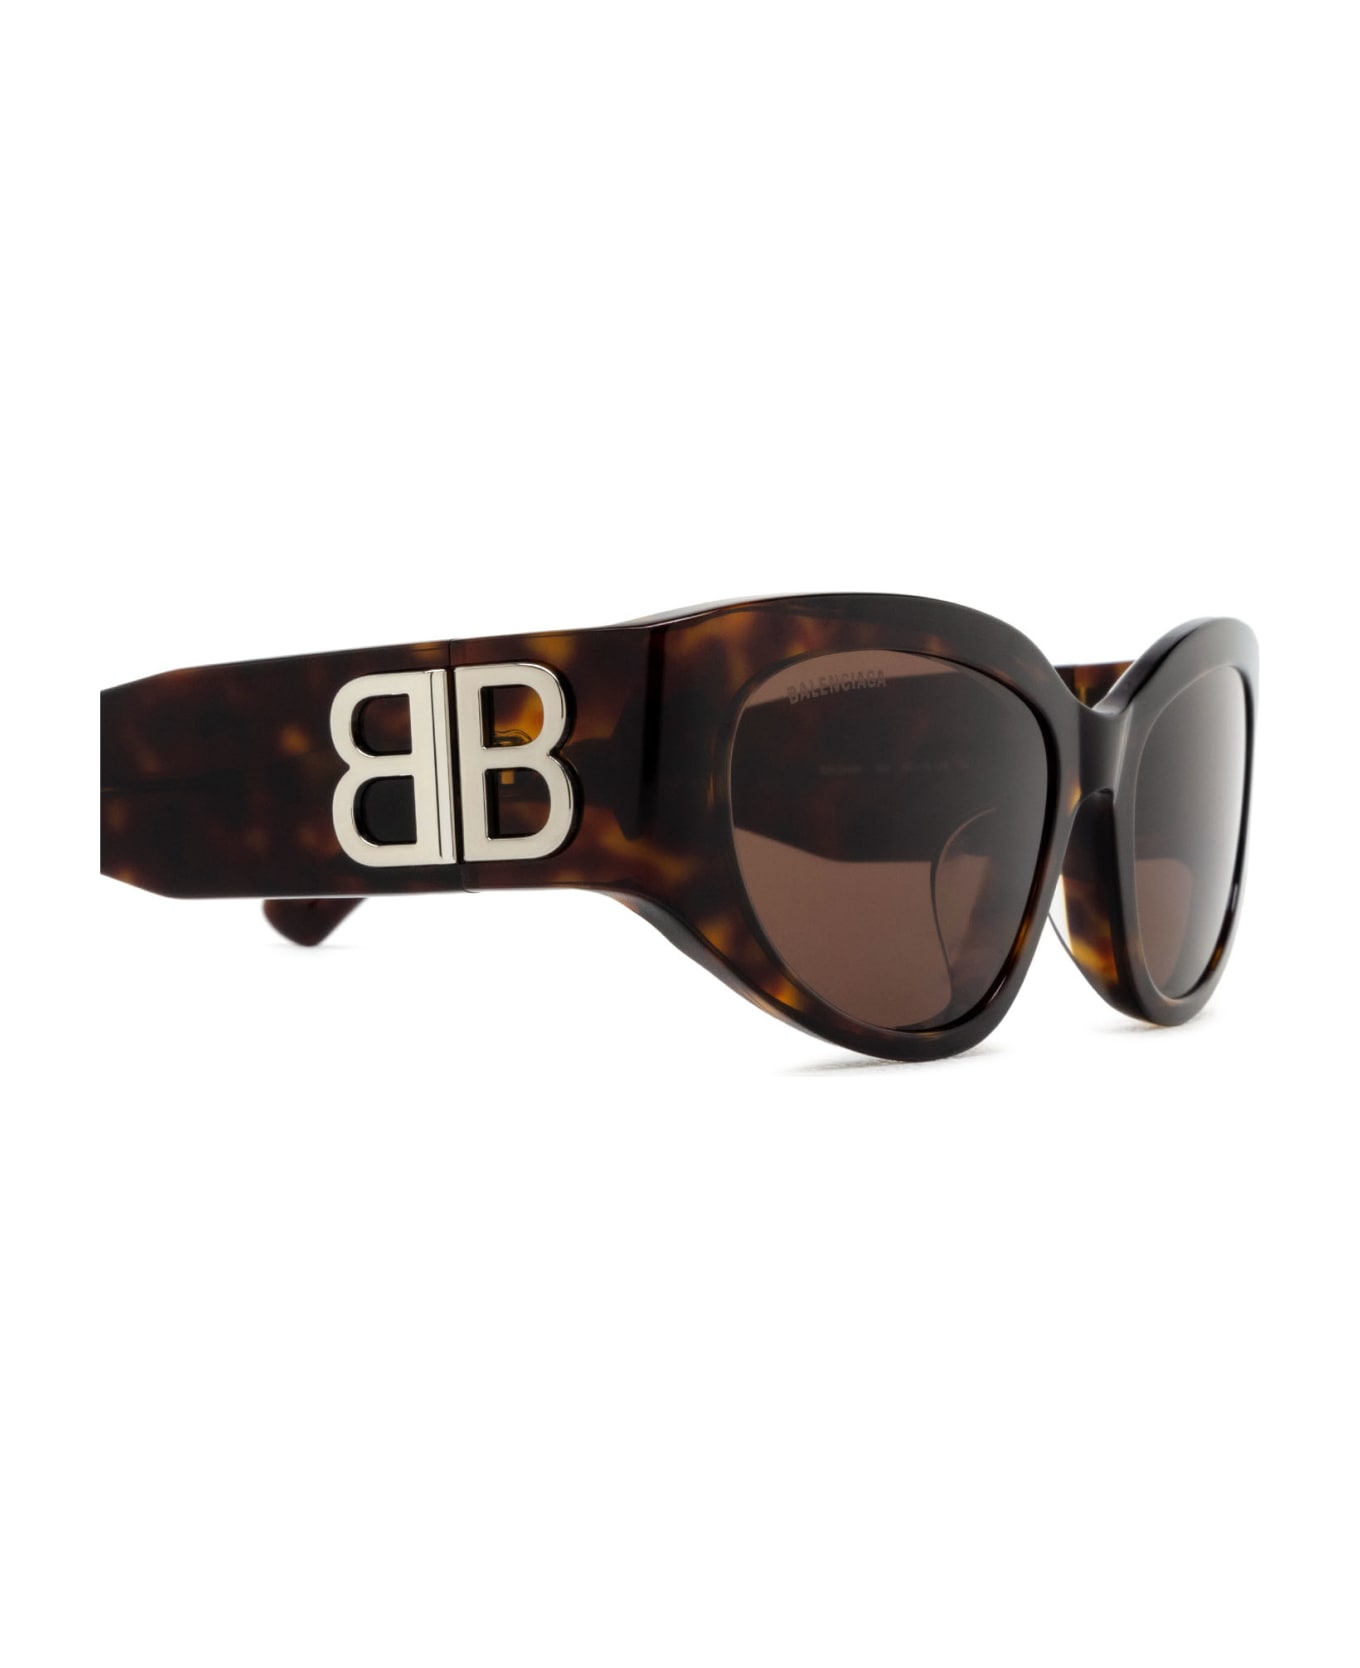 Balenciaga Eyewear Bb0324sk Havana Sunglasses - Havana